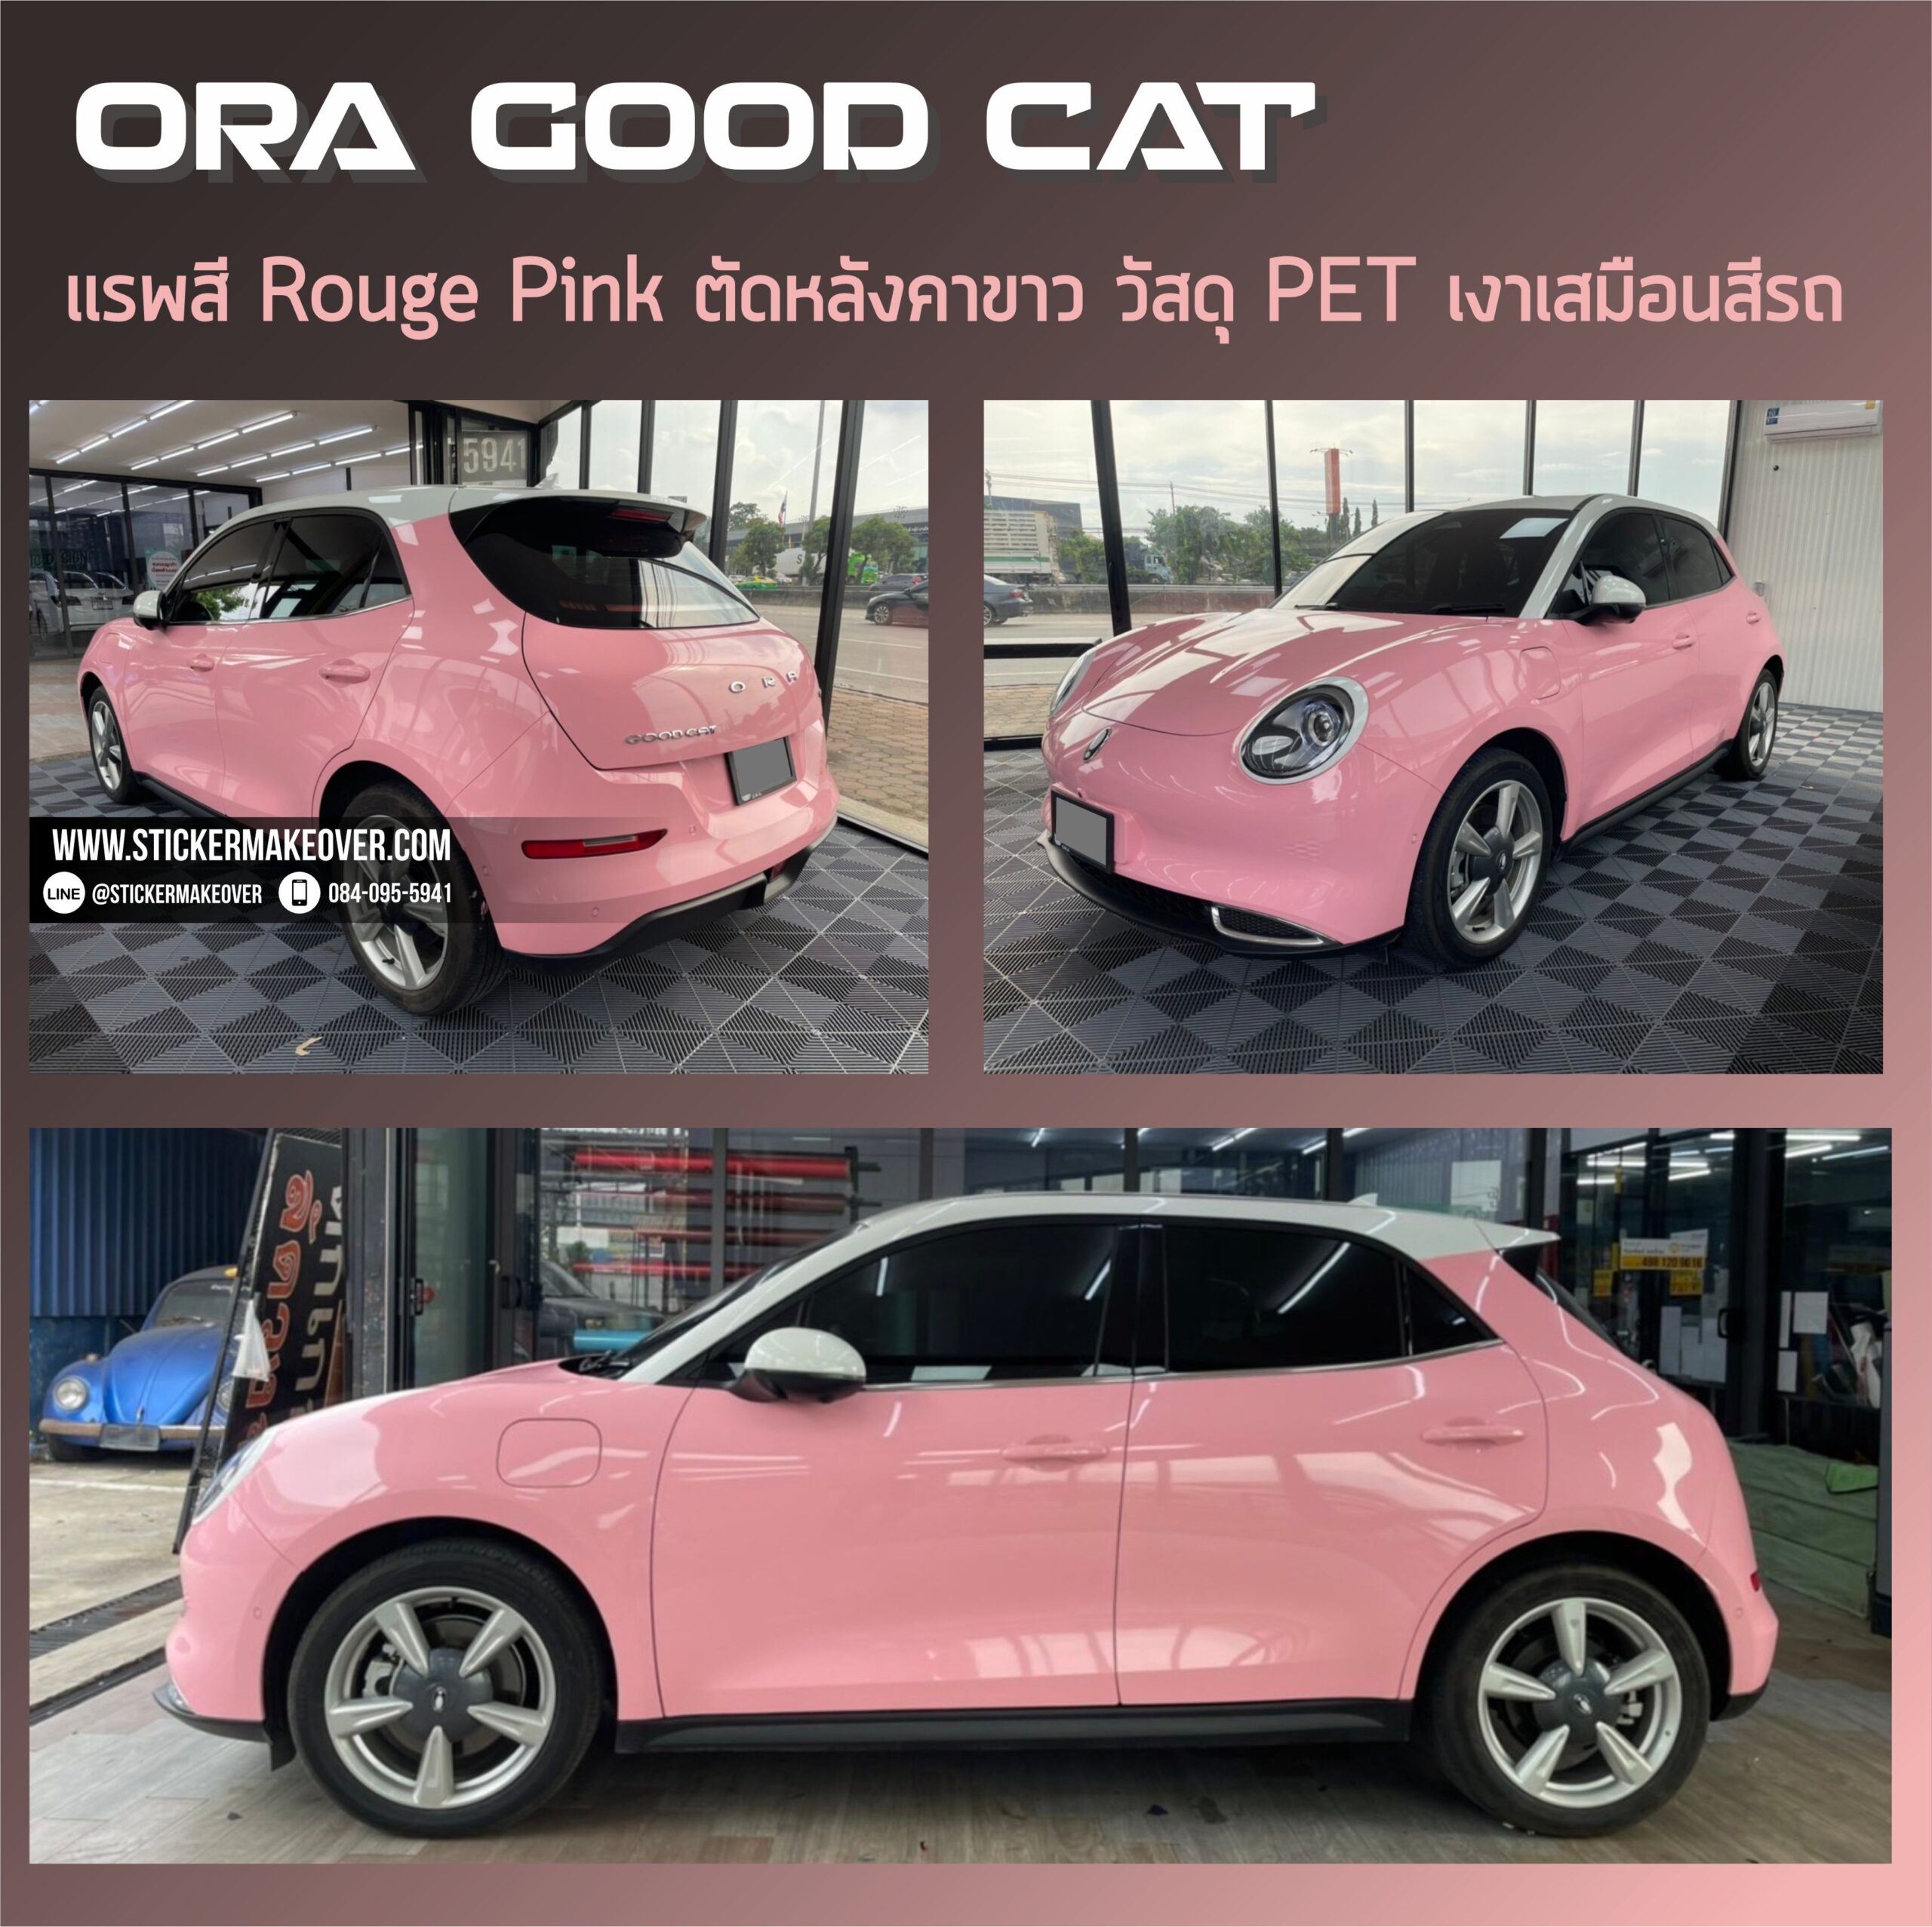 หุ้มเปลี่ยนสี ORA Goodcatสีชมพู หุ้มเปลี่ยนสีรถด้วยสติกเกอร์ wrap car ORA Goodcatสีชมพู แรพเปลี่ยนสีรถ แรพสติกเกอร์สีรถ ORA Goodcatสีชมพู เปลี่ยนสีรถด้วยฟิล์ม หุ้มสติกเกอร์เปลี่ยนสีรถORA Goodcatสีชมพู wrapเปลี่ยนสีรถ ติดสติกเกอร์รถ ร้านสติกเกอร์แถวนนทบุรี หุ้มเปลี่ยนสีรถราคาไม่แพง สติกเกอร์ติดรถทั้งคัน ฟิล์มติดสีรถ สติกเกอร์หุ้มเปลี่ยนสีรถ Wrapสีรถนนทบุรี